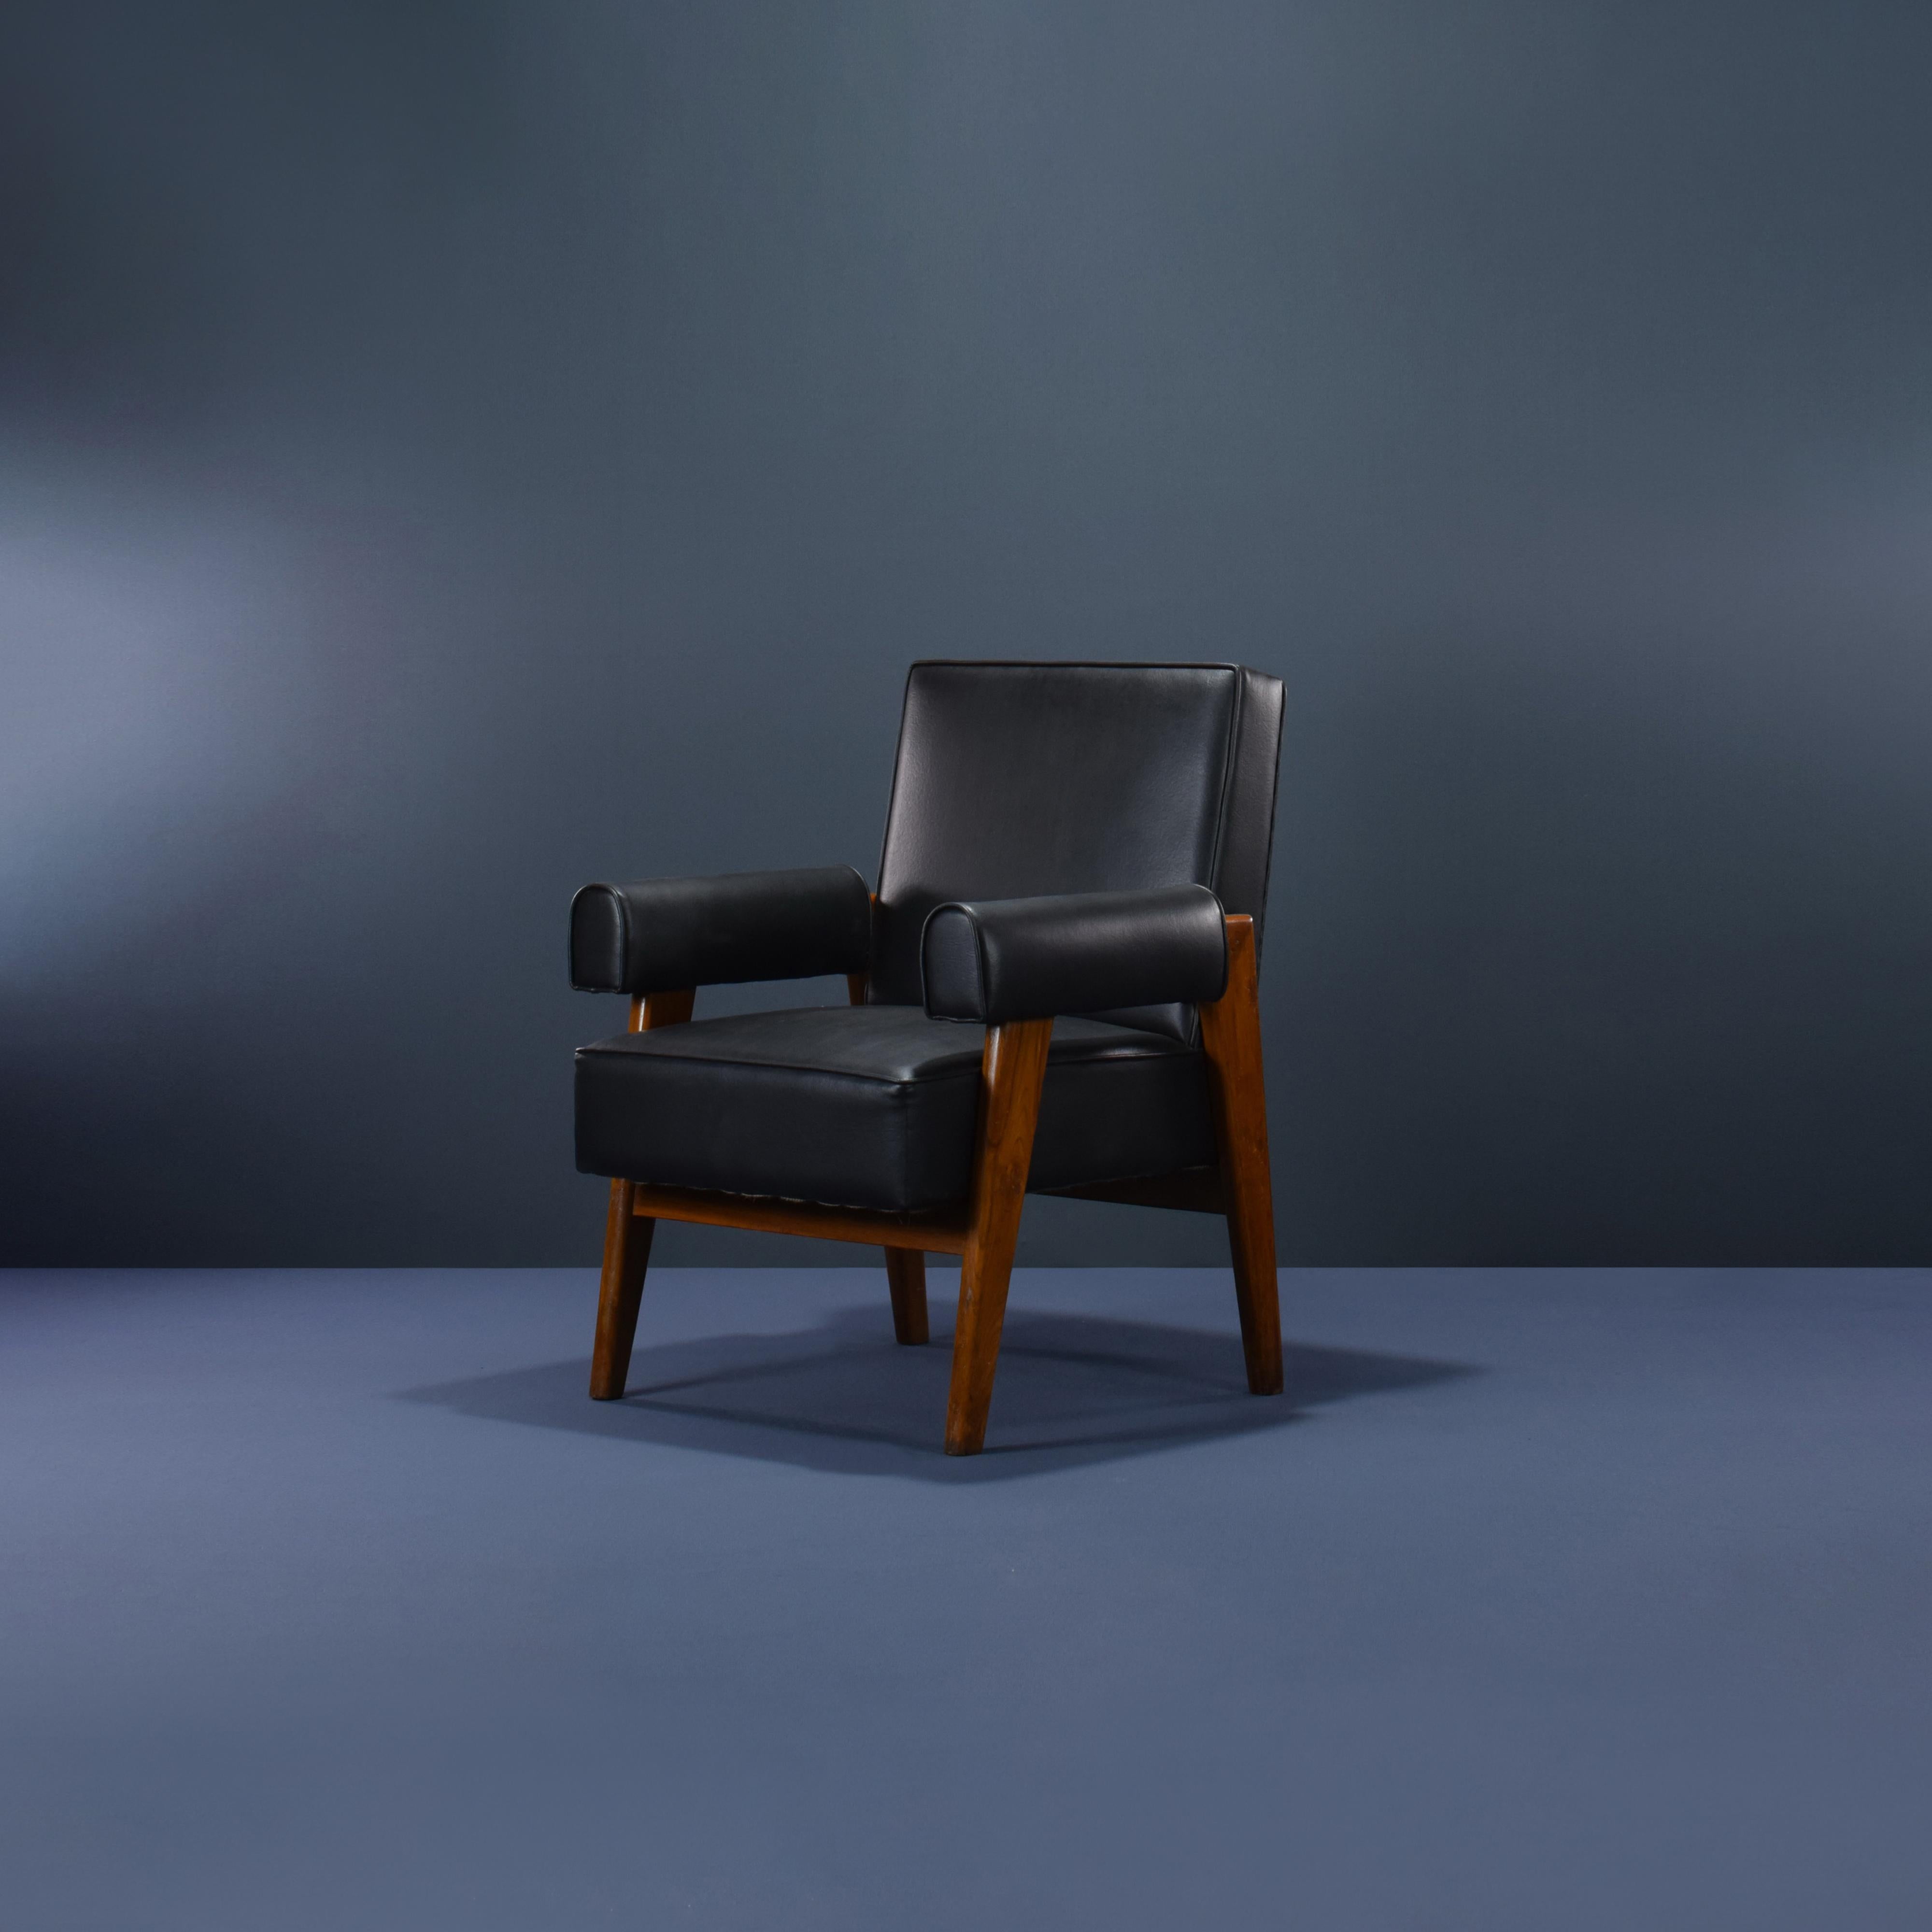 Cette paire de chaises est une pièce fantastique. Elles sont brutes dans leur simplicité, rien de trop mais pourtant rien ne manque. Nous pouvons réaliser n'importe quelle tapisserie d'ameublement, dans n'importe quelle couleur et n'importe quel